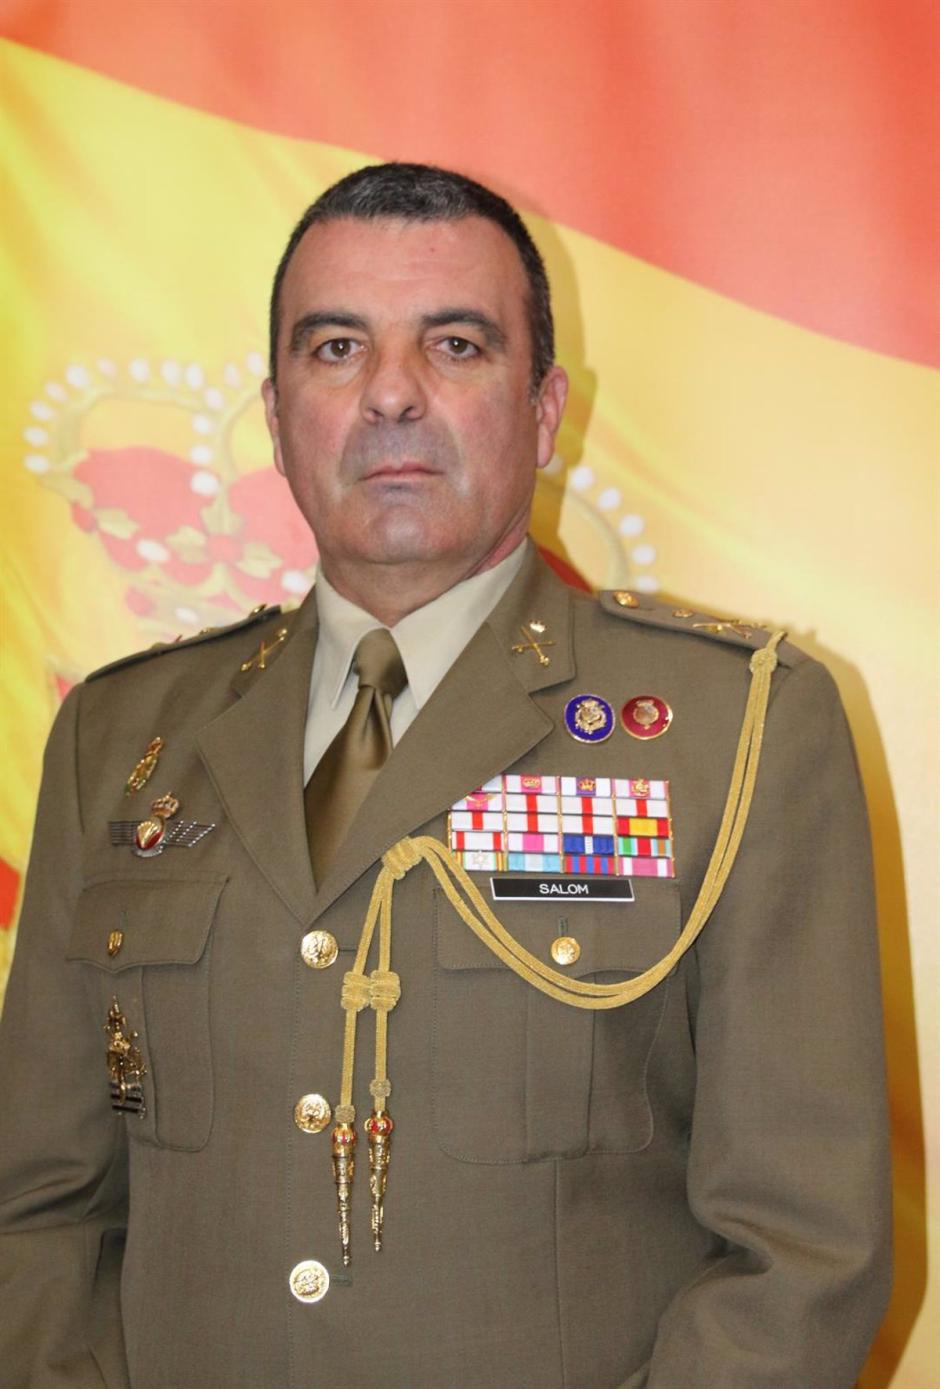 Julio Salom Herrera